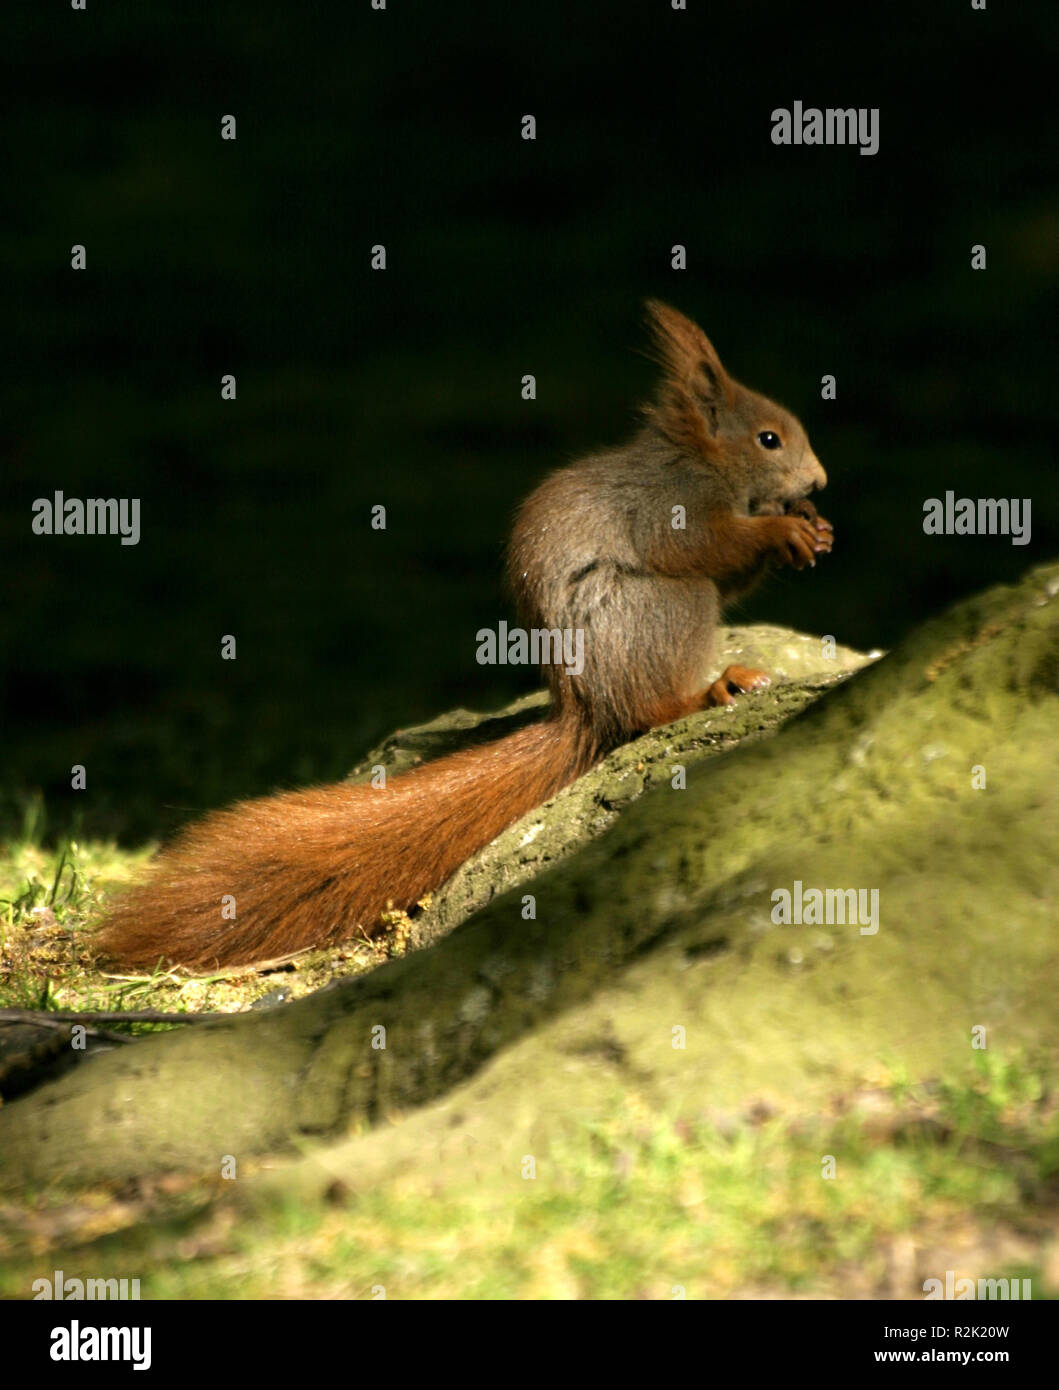 europ. squirrel,sciurus vulgaris Stock Photo